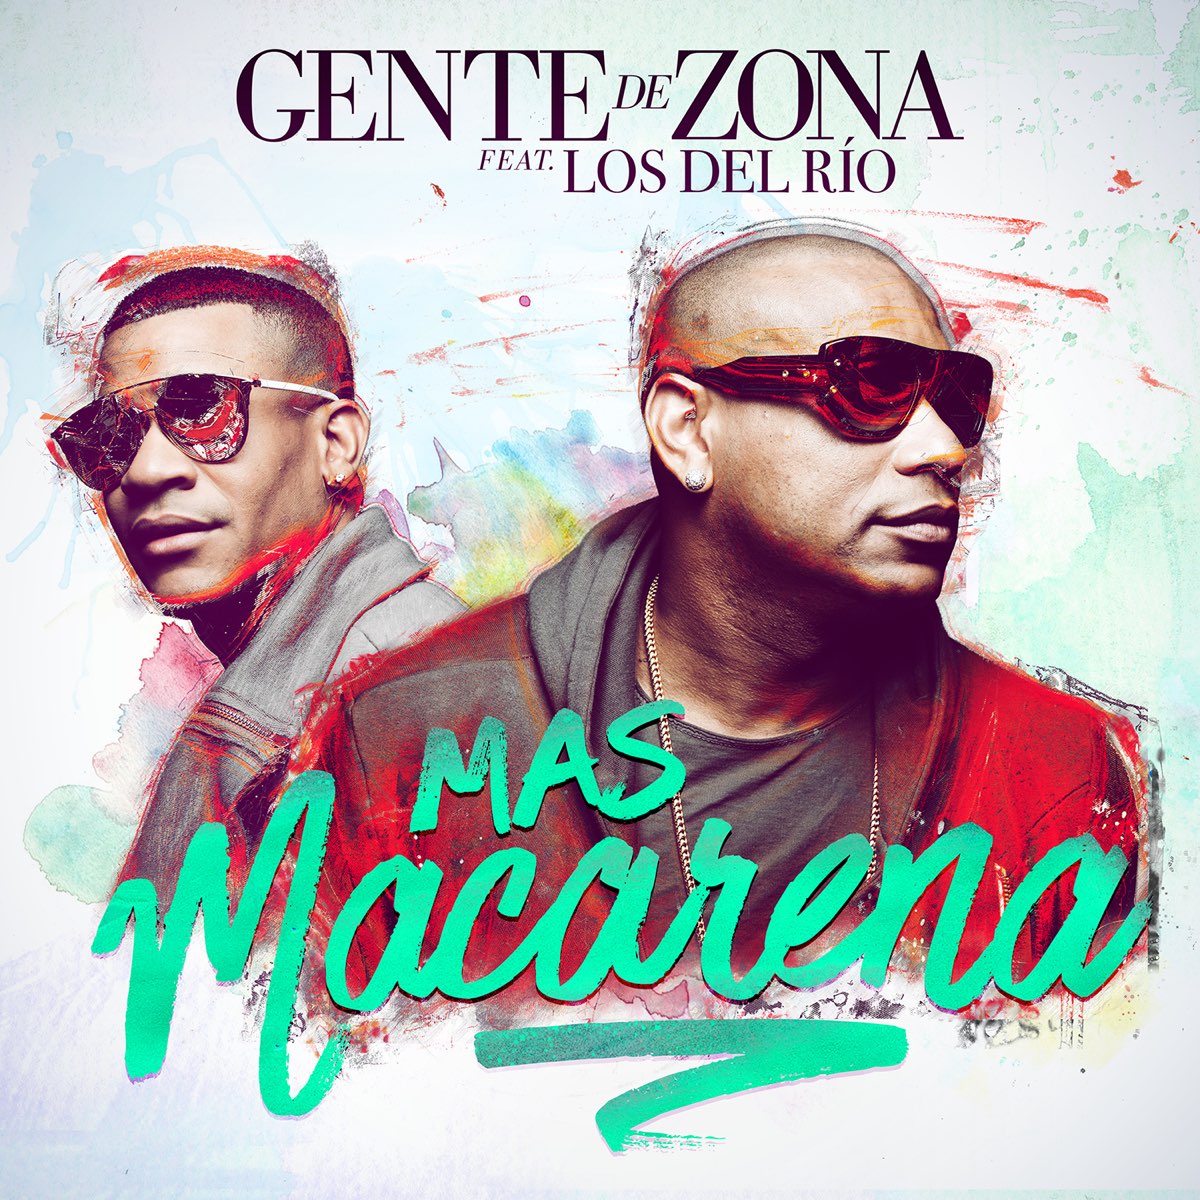 Mas Macarena (feat. Los del Río) - Single by Gente de Zona on Apple Music